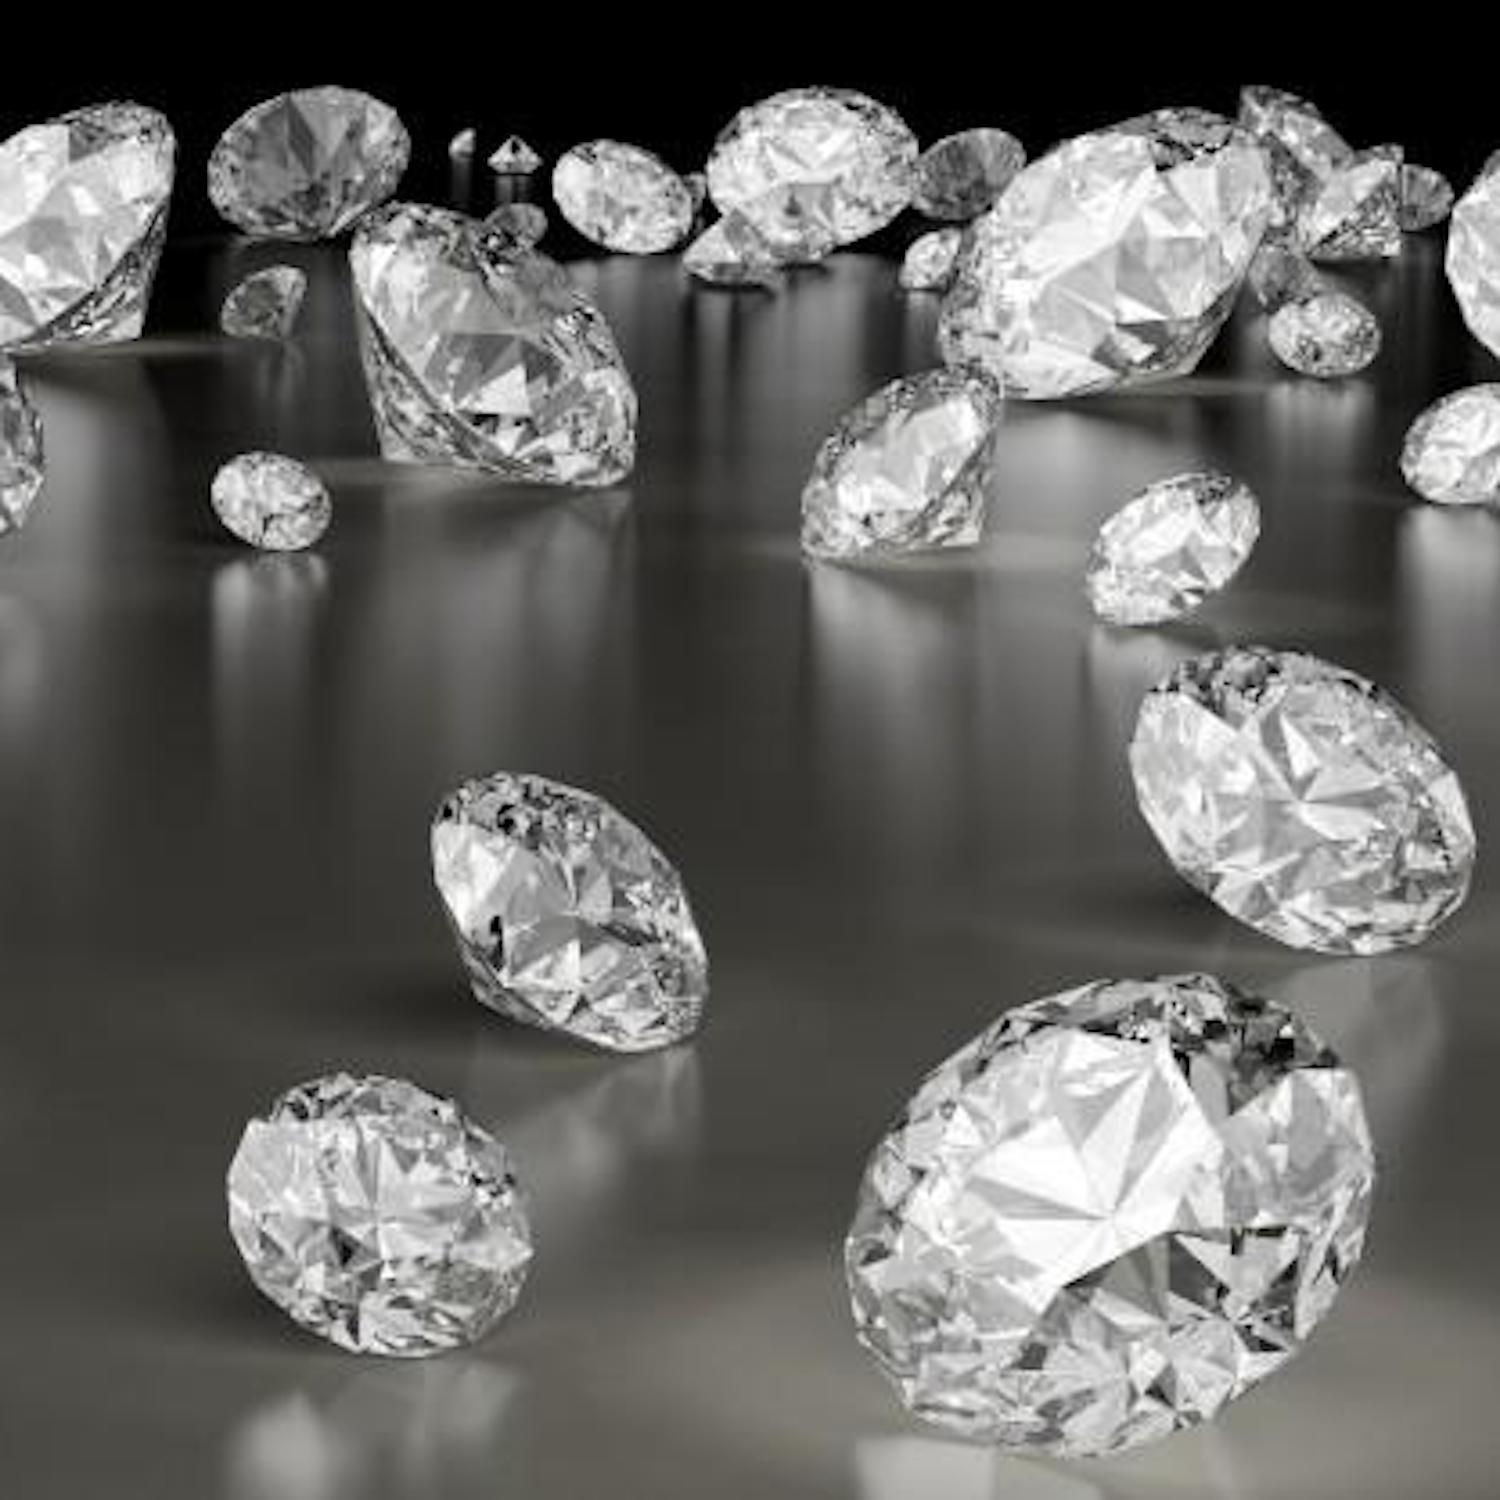 loose diamonds